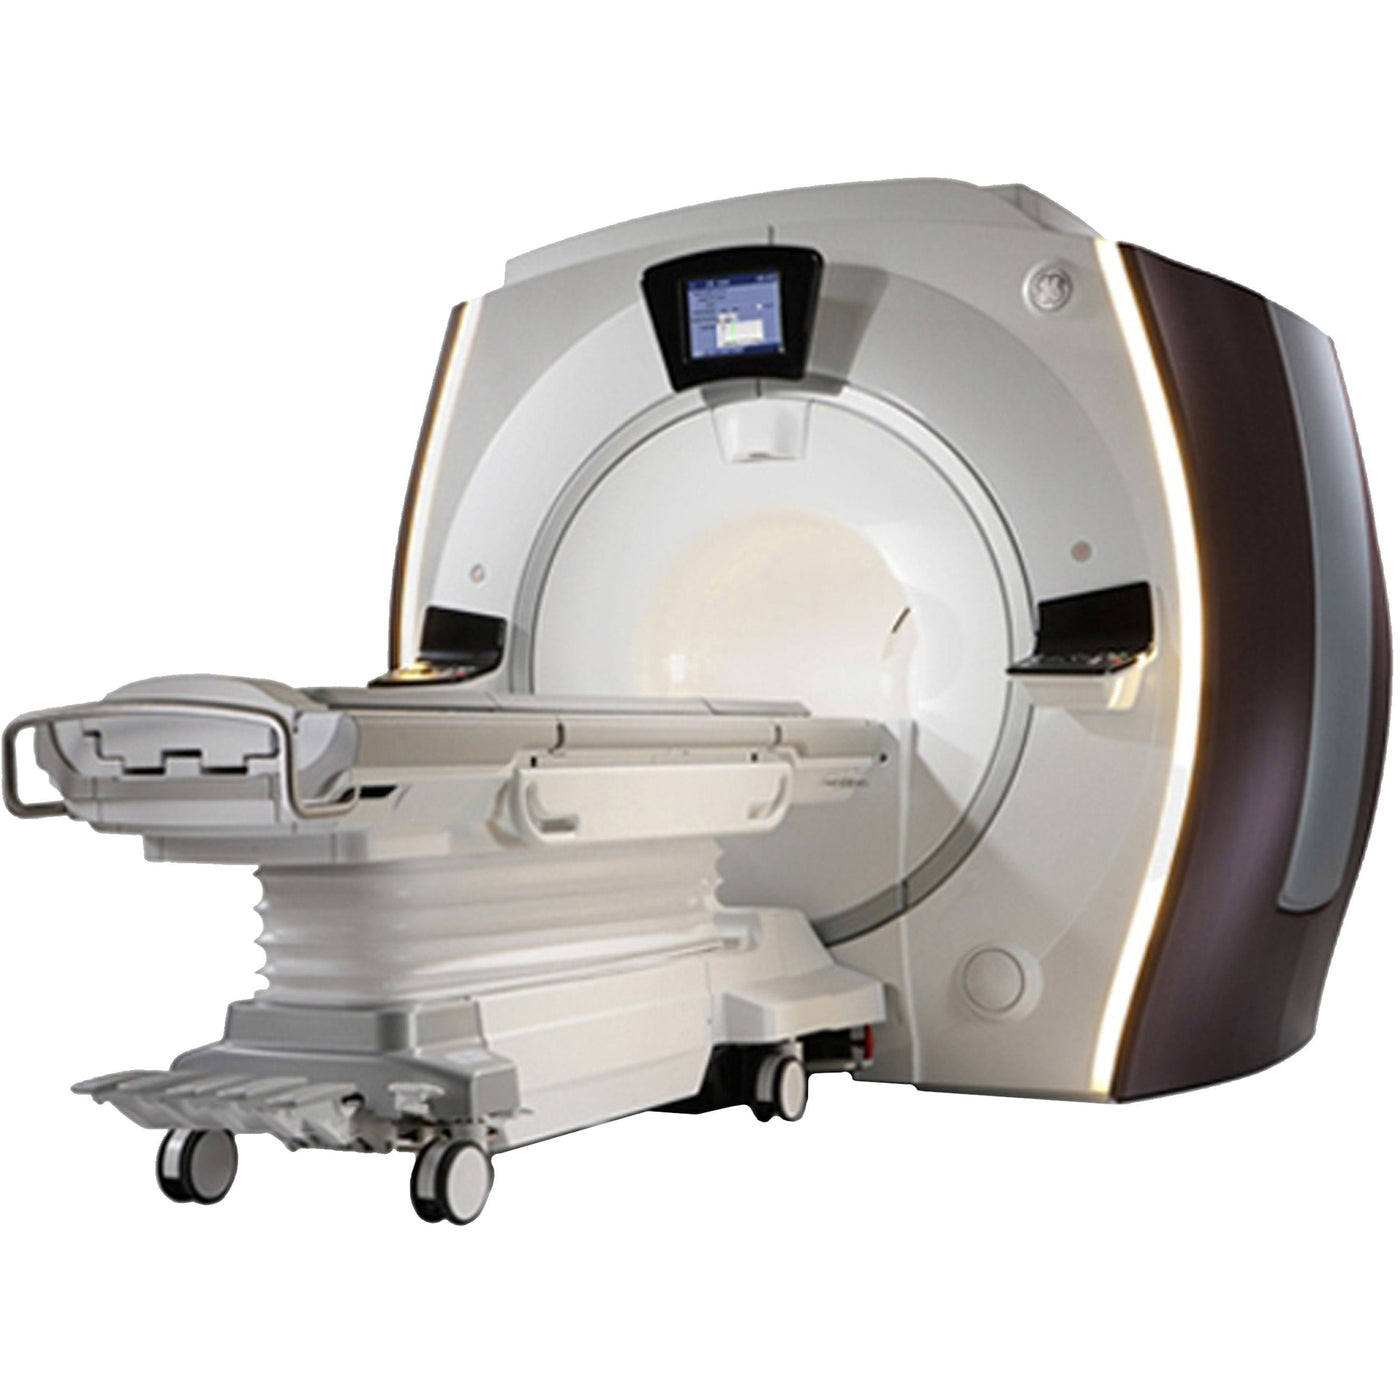 GE Optima MRI